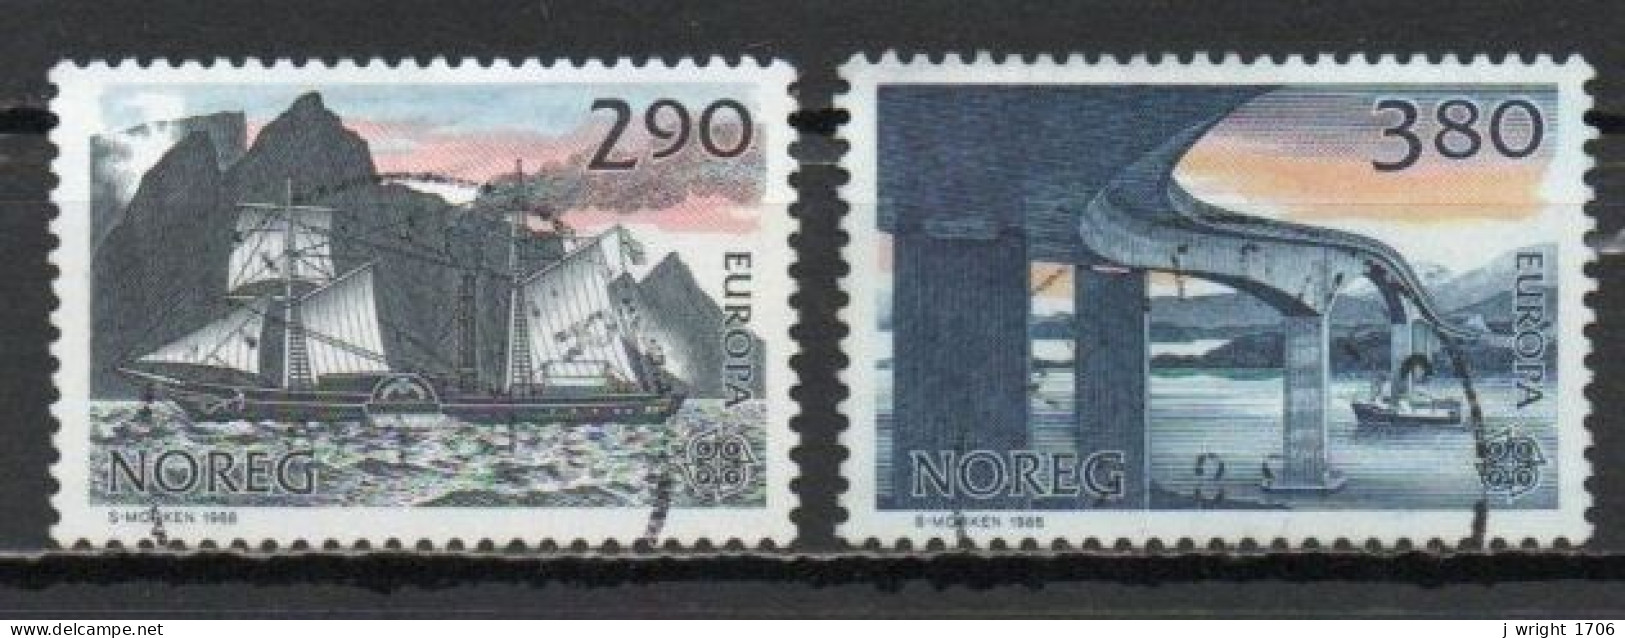 Norway, 1988, Europa CEPT, Set, USED - Gebraucht